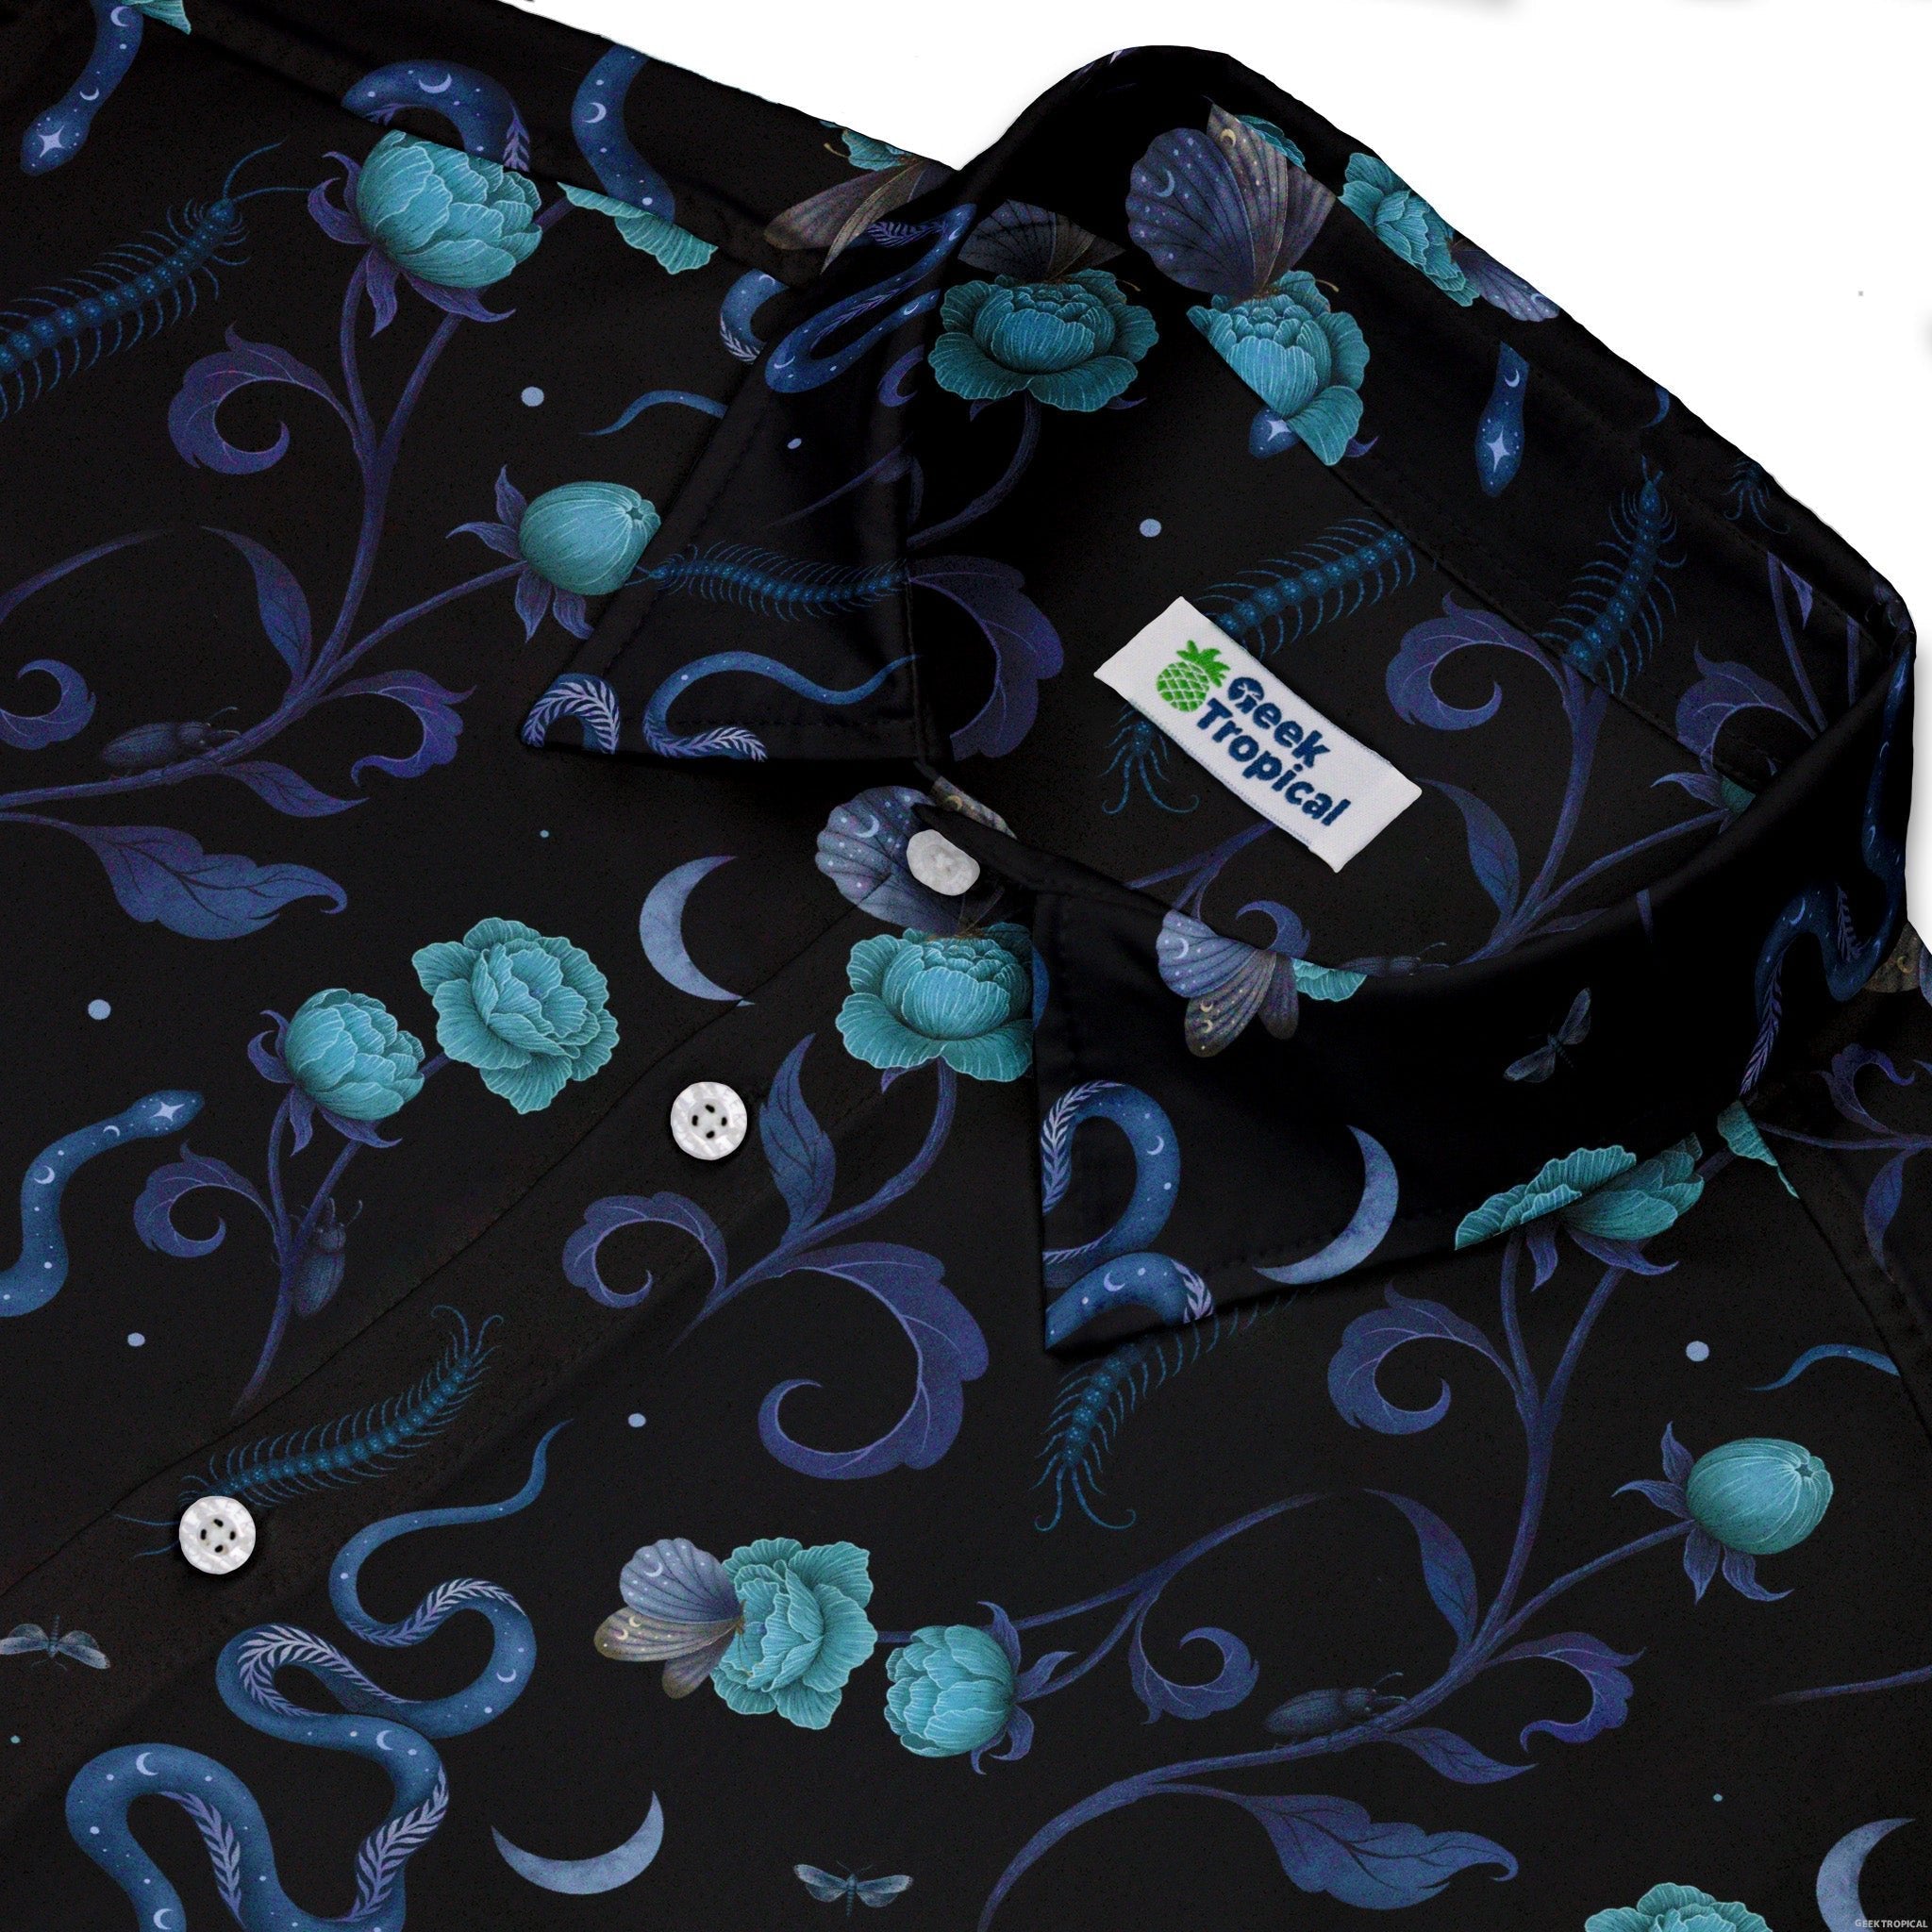 Episodic Serpent Garden Blue Space Button Up Shirt - XS - Hawaiian Shirt - No Pocket -